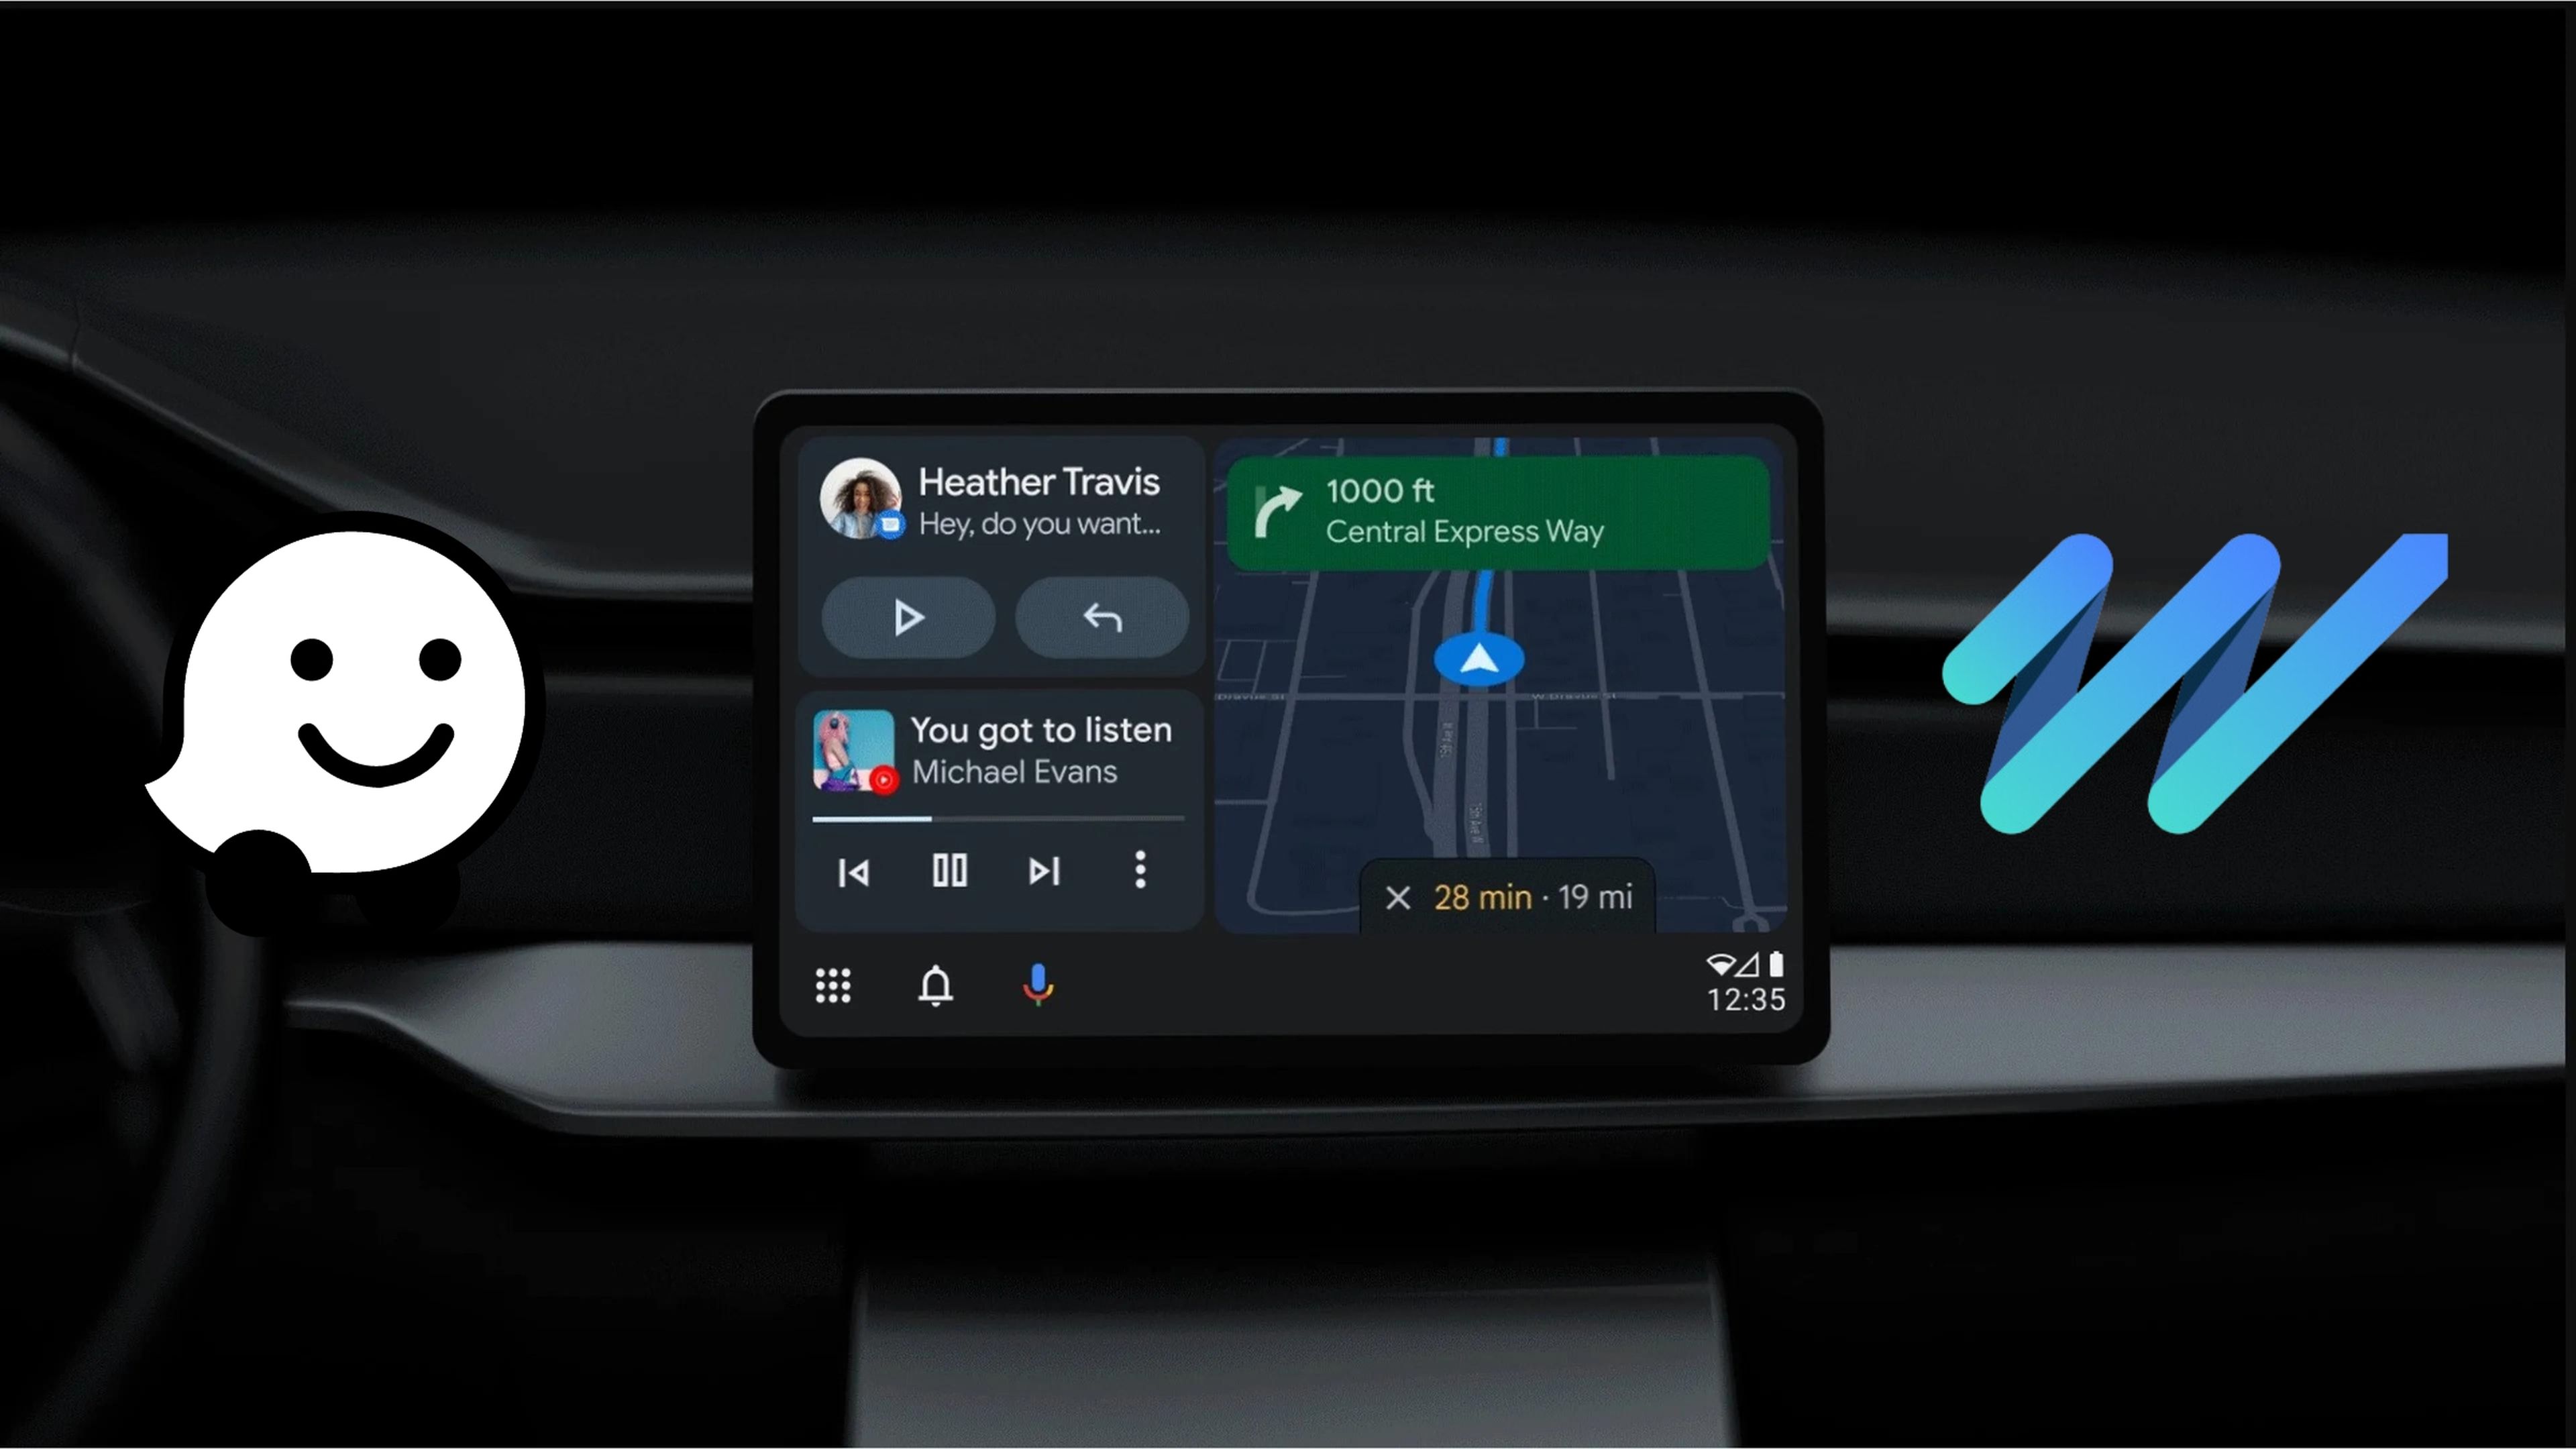 Las ventajas que tiene Here WeGo frente a Waze en Android Auto